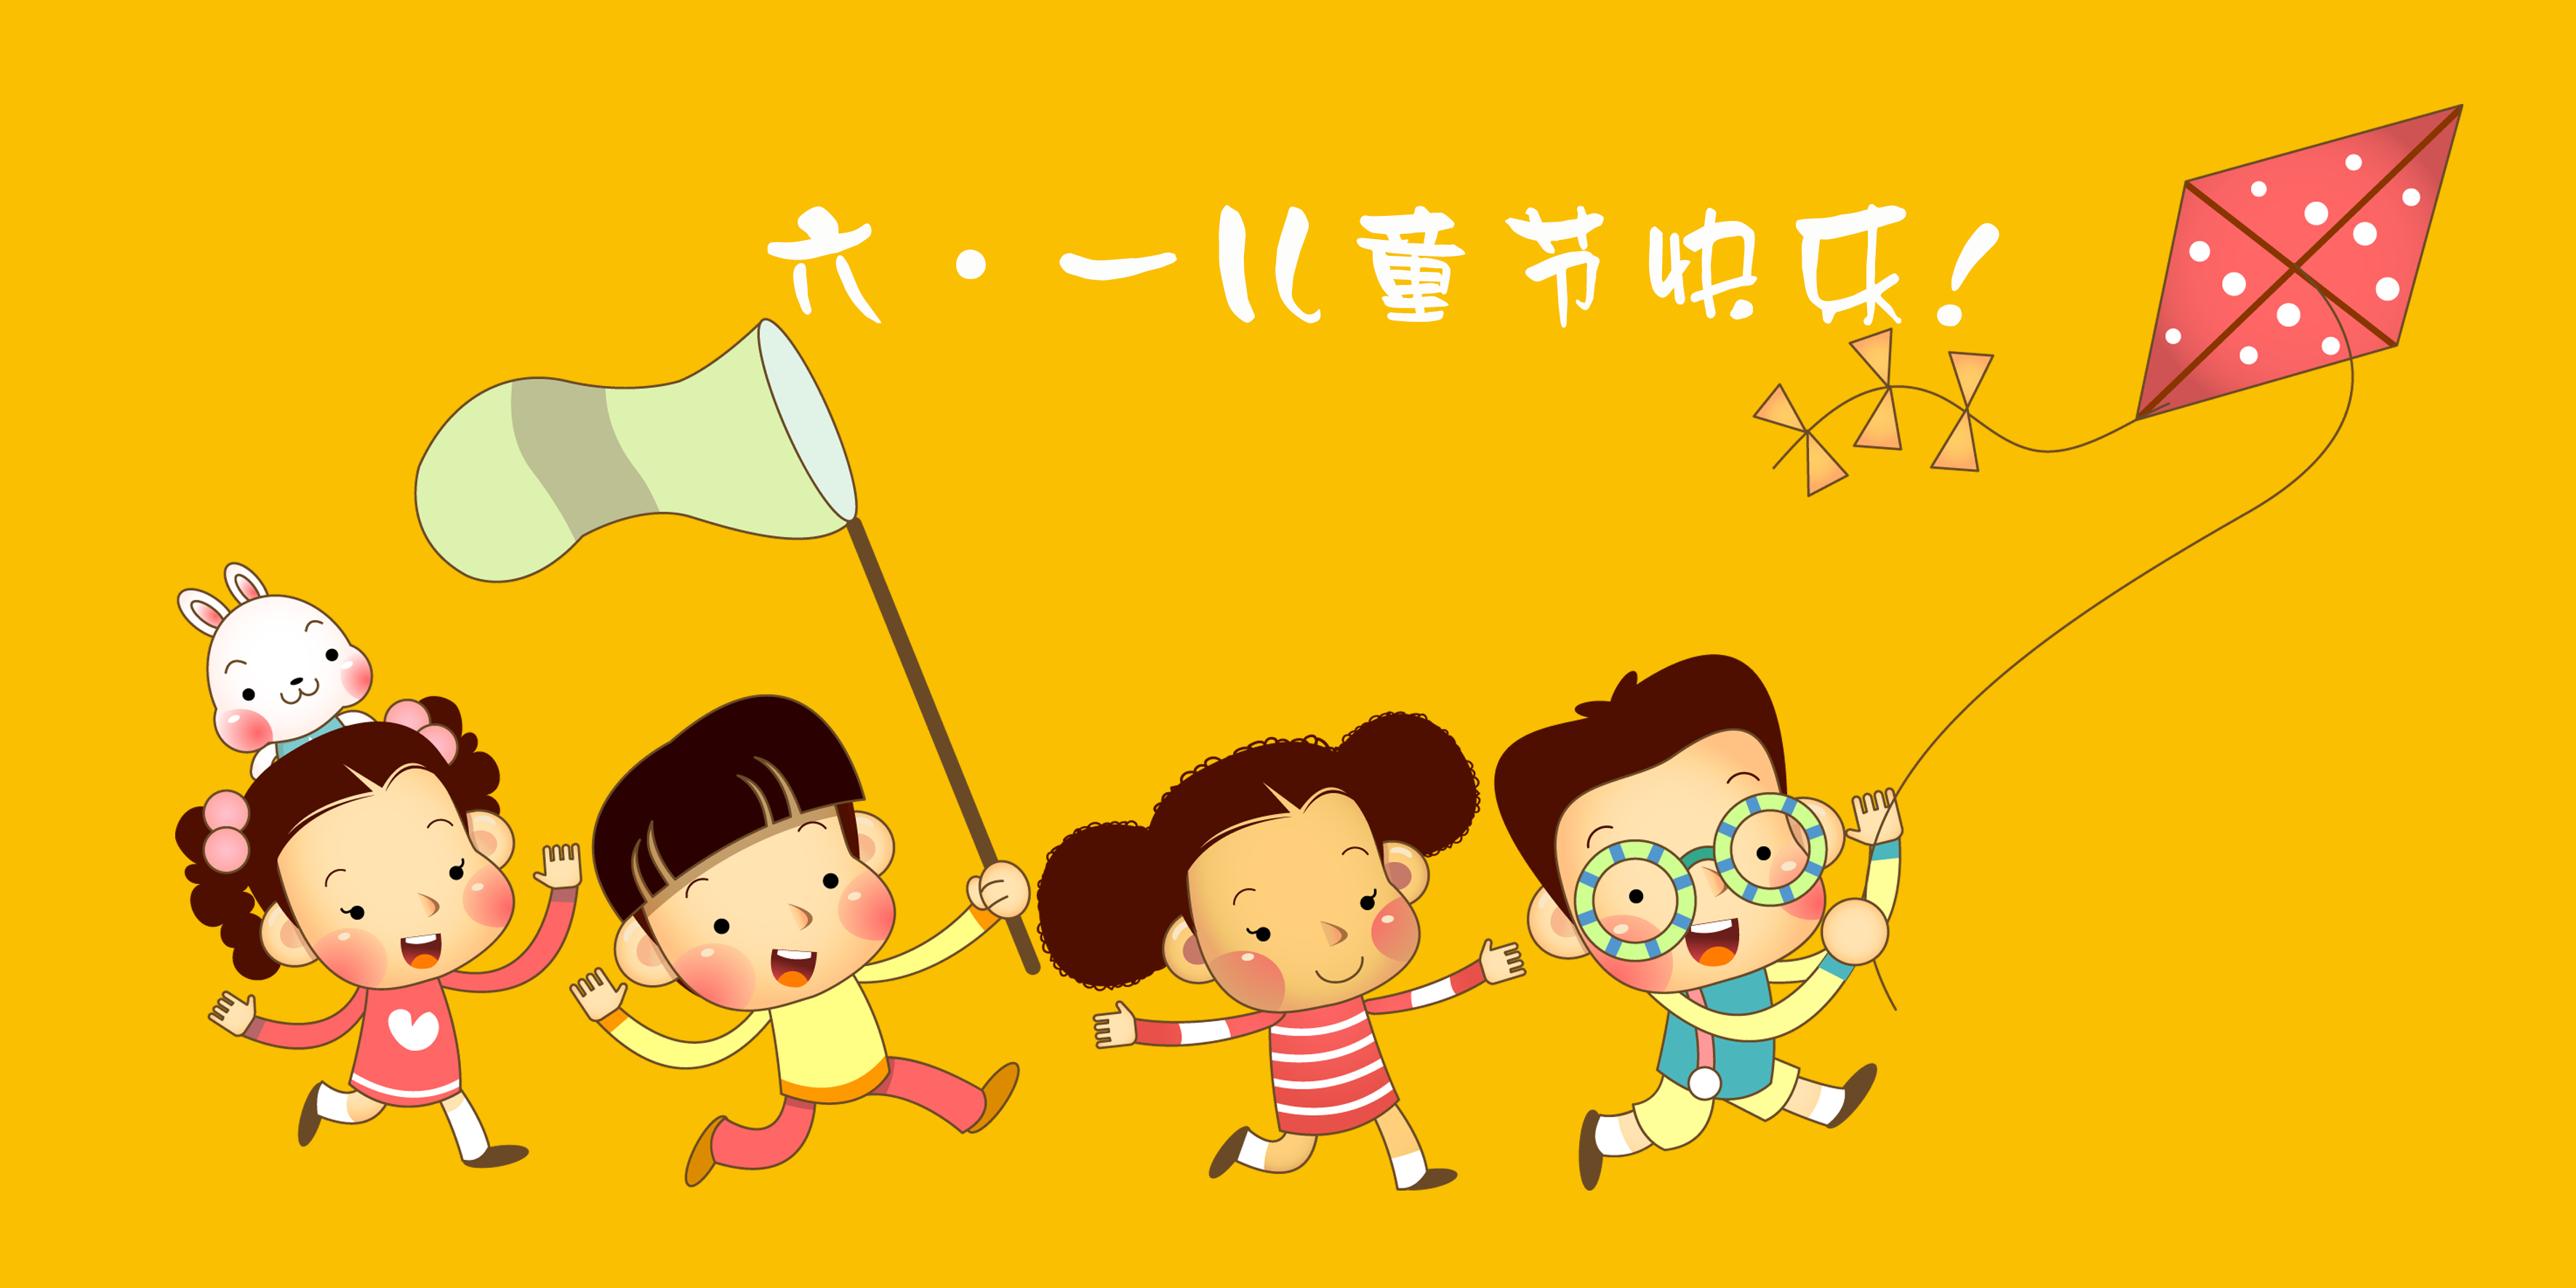 明天就是六一儿童节了真羡慕那些小朋友又可以出去玩了城锅在读小学的